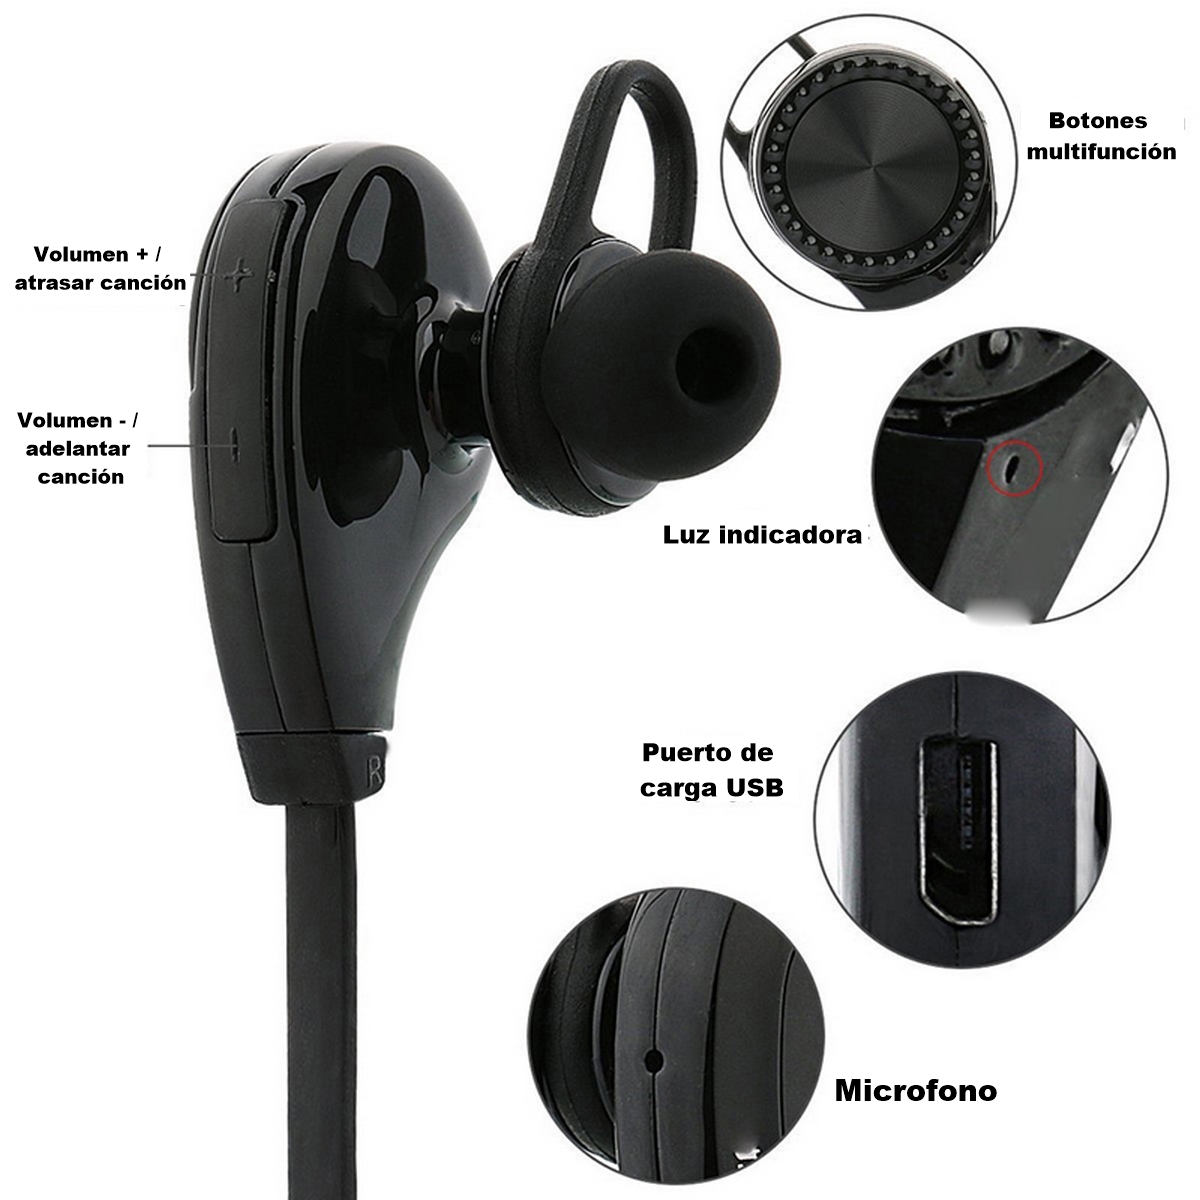 Auriculares Universales Con Cable, Micrófono, Botones Multifunción